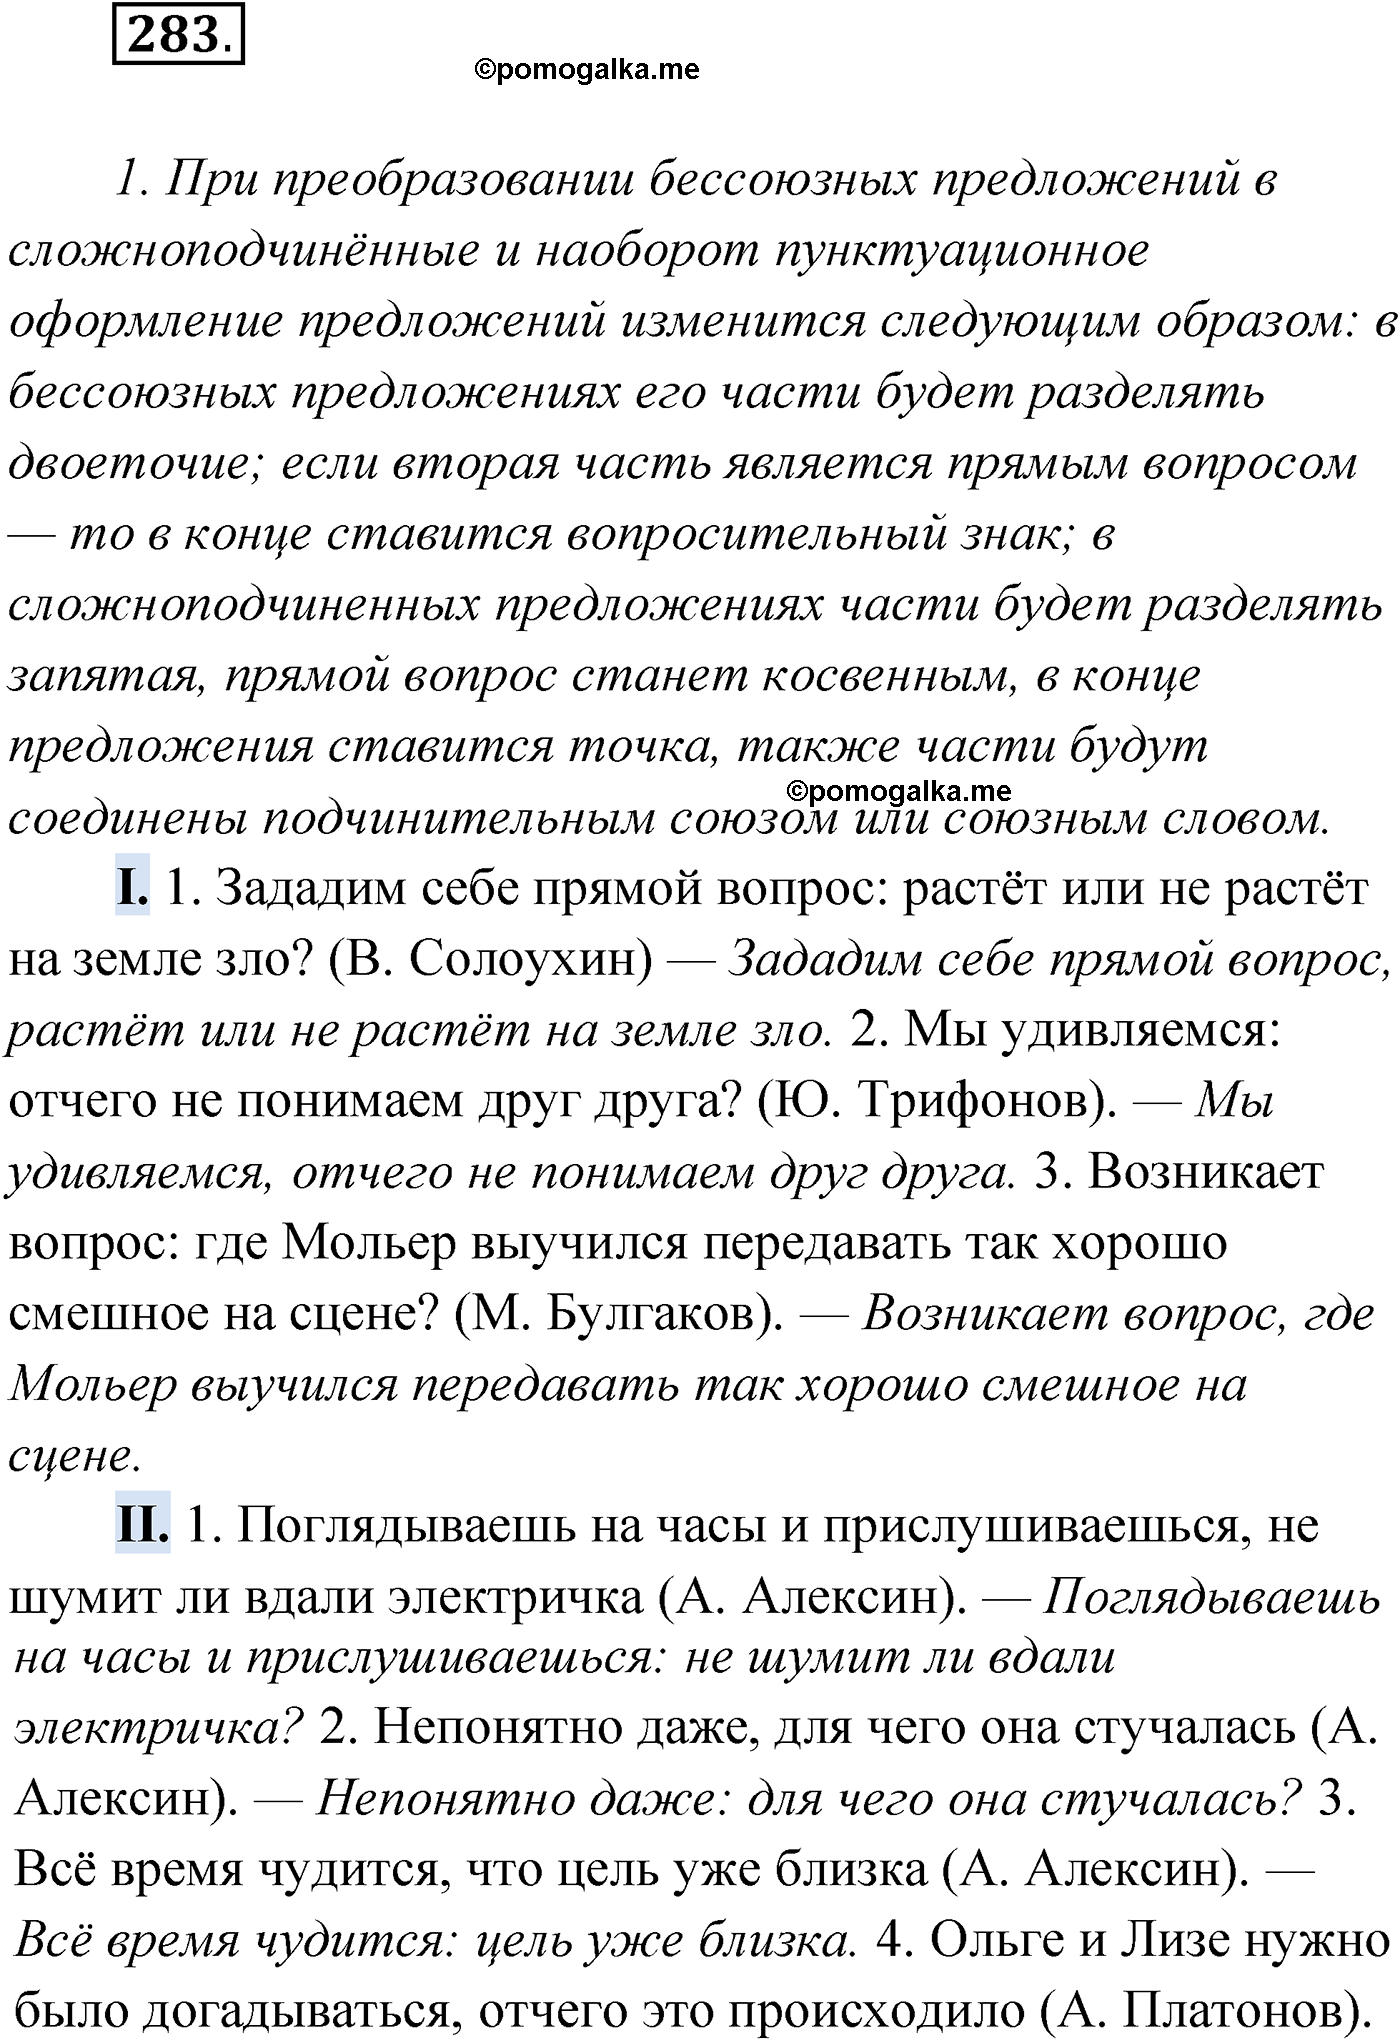 упражнение №283 русский язык 9 класс Мурина 2019 год